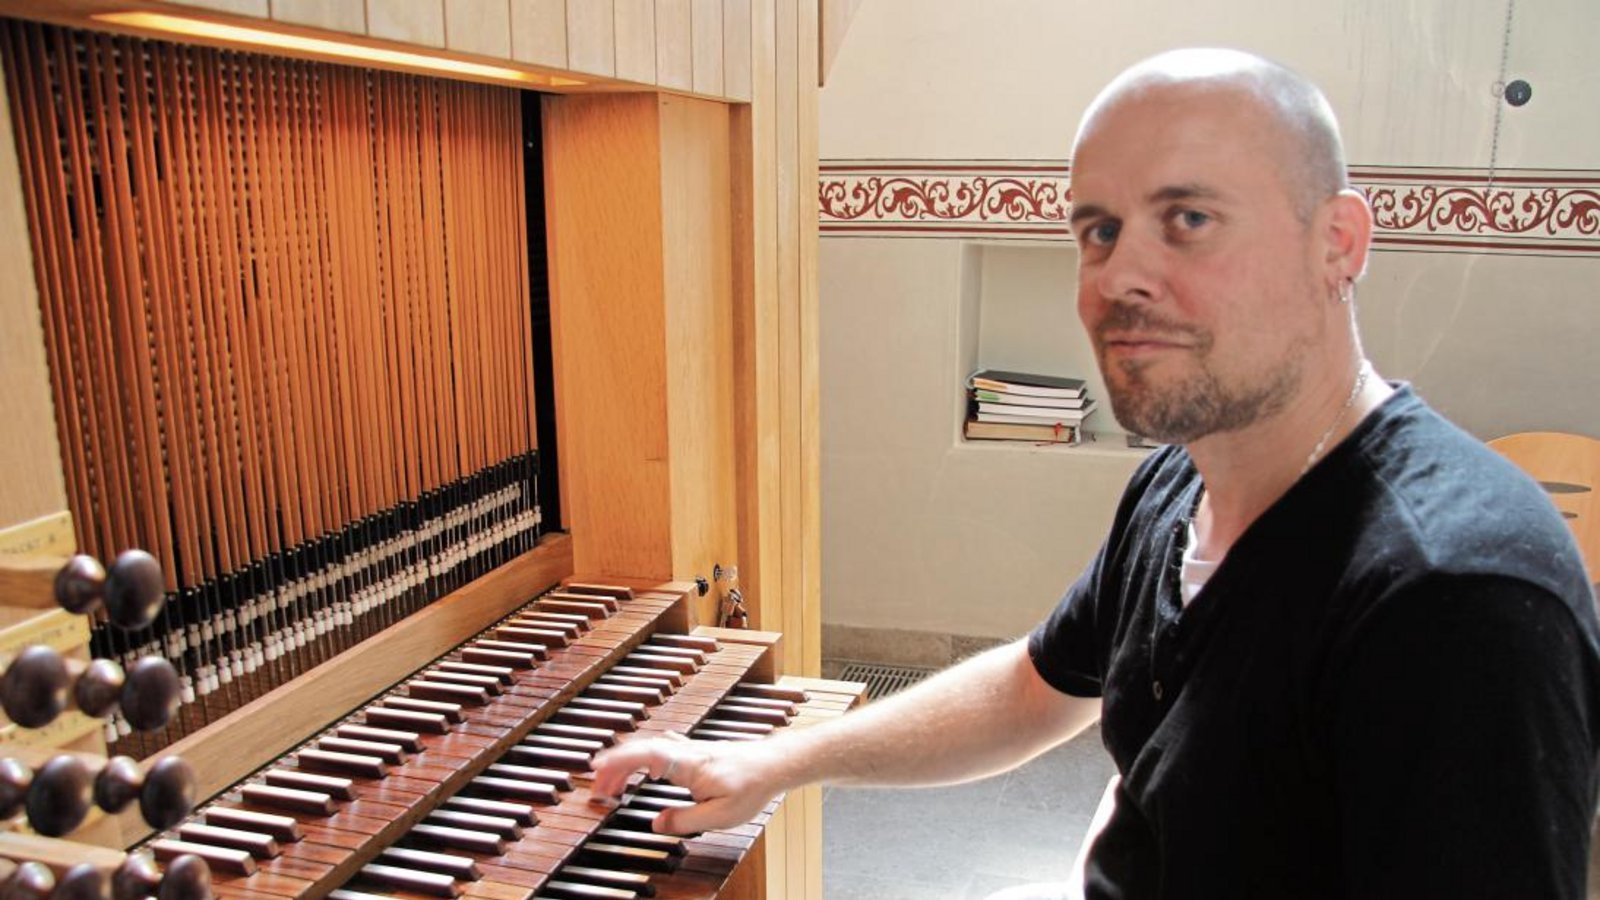 Völliges Neuland betrat VKZ-Redakteur und Musik-Laie Michael Banholzer beim Orgelspiel in der Roßwager Kirche.  Foto: Huttenlocher